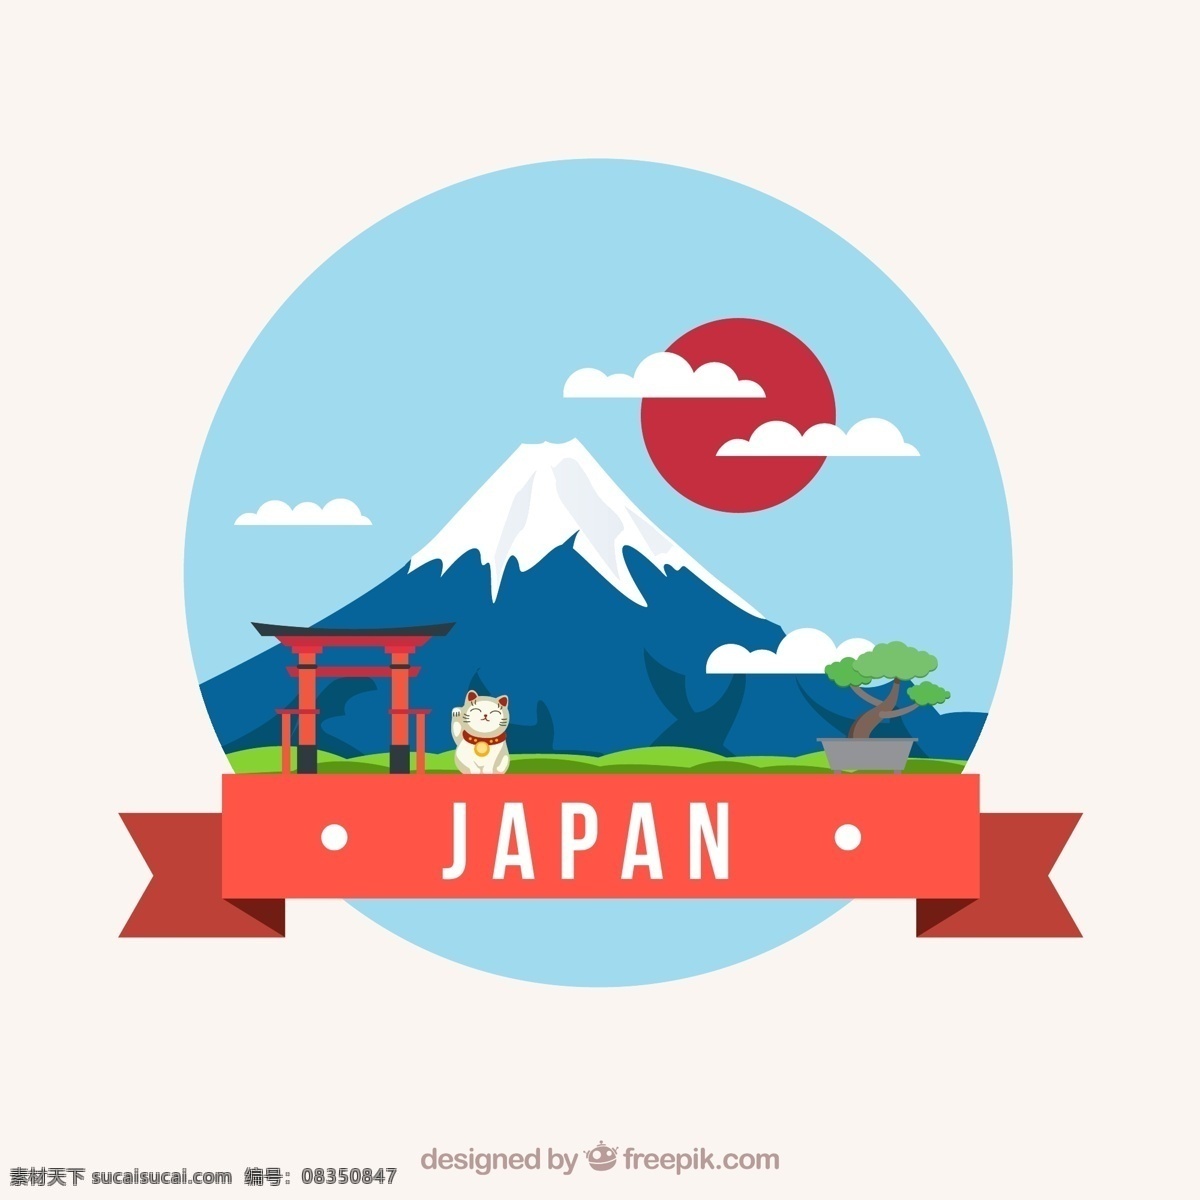 创意 日本 风景 插画 矢量 富士山 创意日本 矢量素材 动漫动画 风景漫画